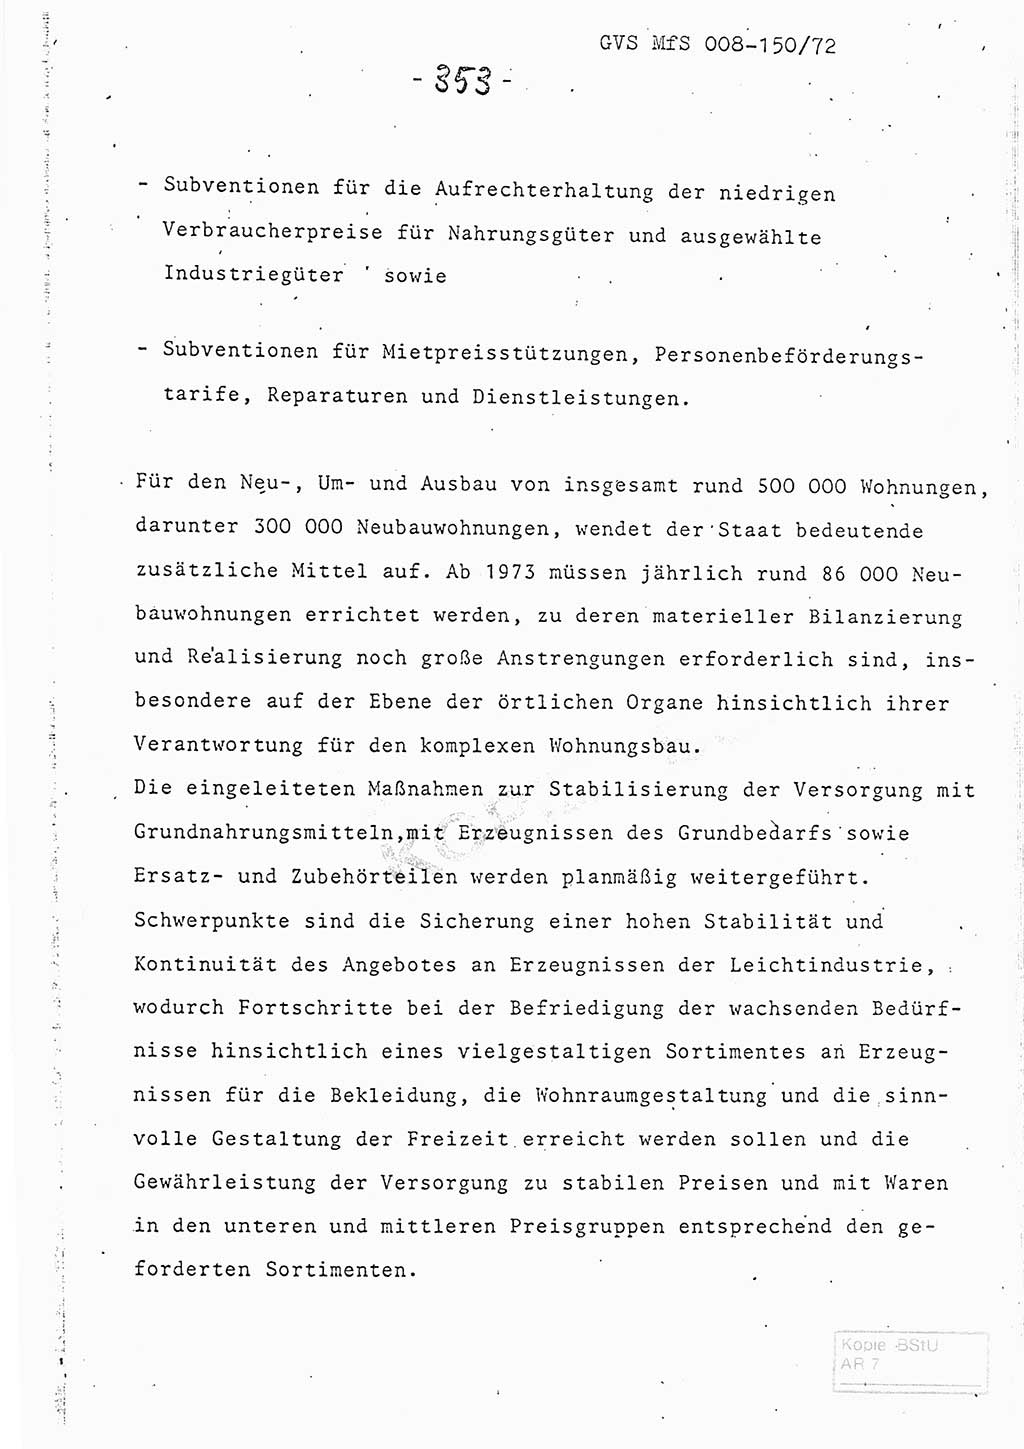 Referat (Entwurf) des Genossen Minister (Generaloberst Erich Mielke) auf der Dienstkonferenz 1972, Ministerium für Staatssicherheit (MfS) [Deutsche Demokratische Republik (DDR)], Der Minister, Geheime Verschlußsache (GVS) 008-150/72, Berlin 25.2.1972, Seite 353 (Ref. Entw. DK MfS DDR Min. GVS 008-150/72 1972, S. 353)